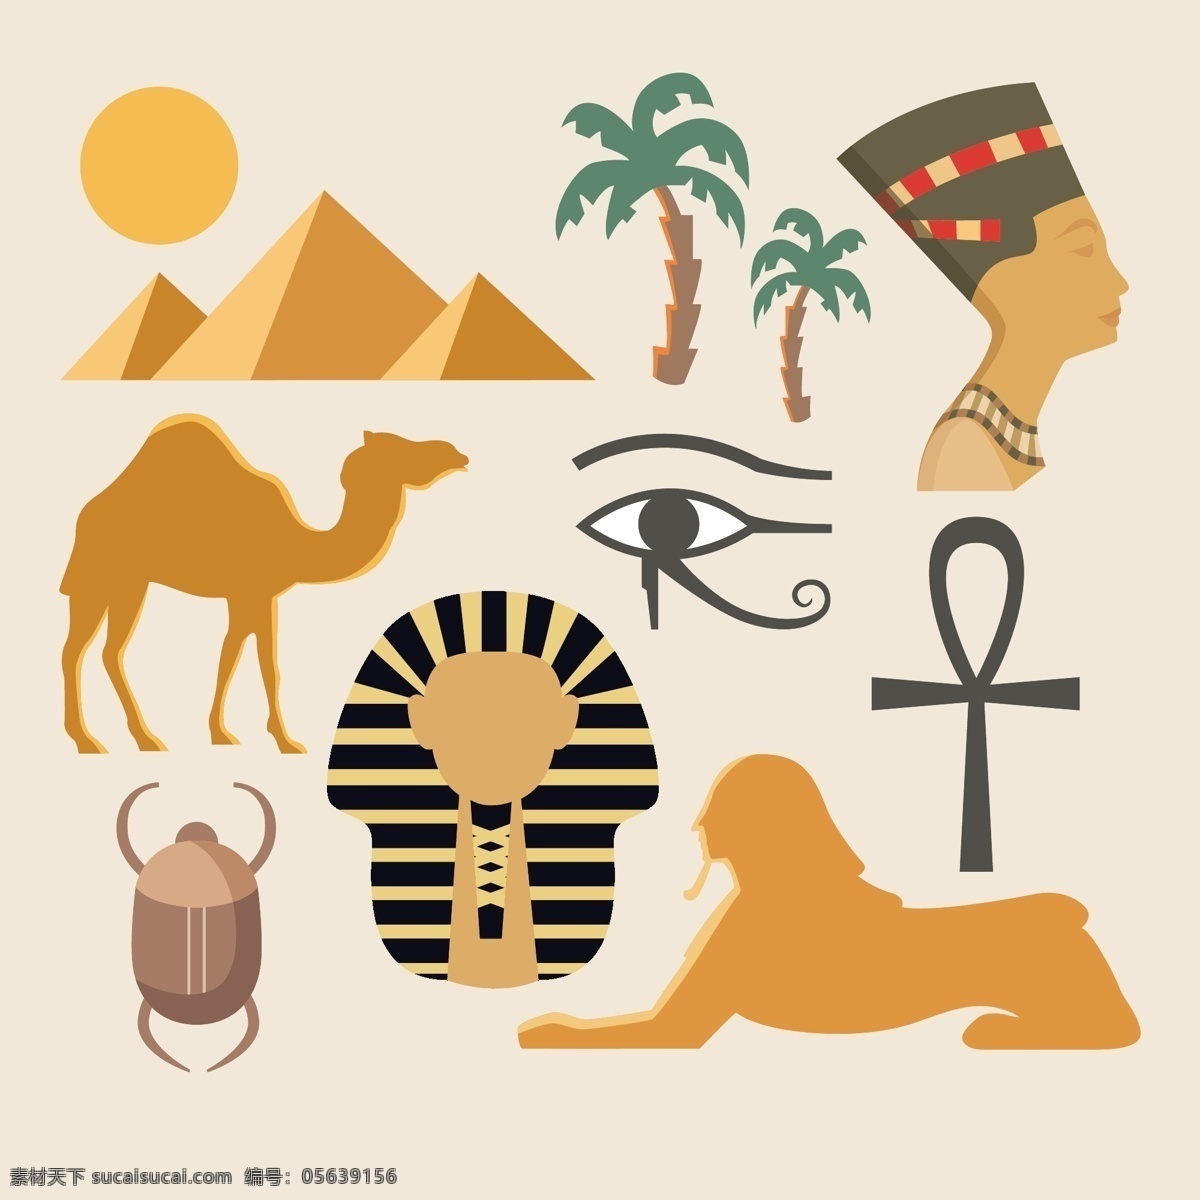 埃及旅游 埃及 旅游元素 埃及文化 法老 木乃伊 金字塔 狮身人面像 椰子树 白色